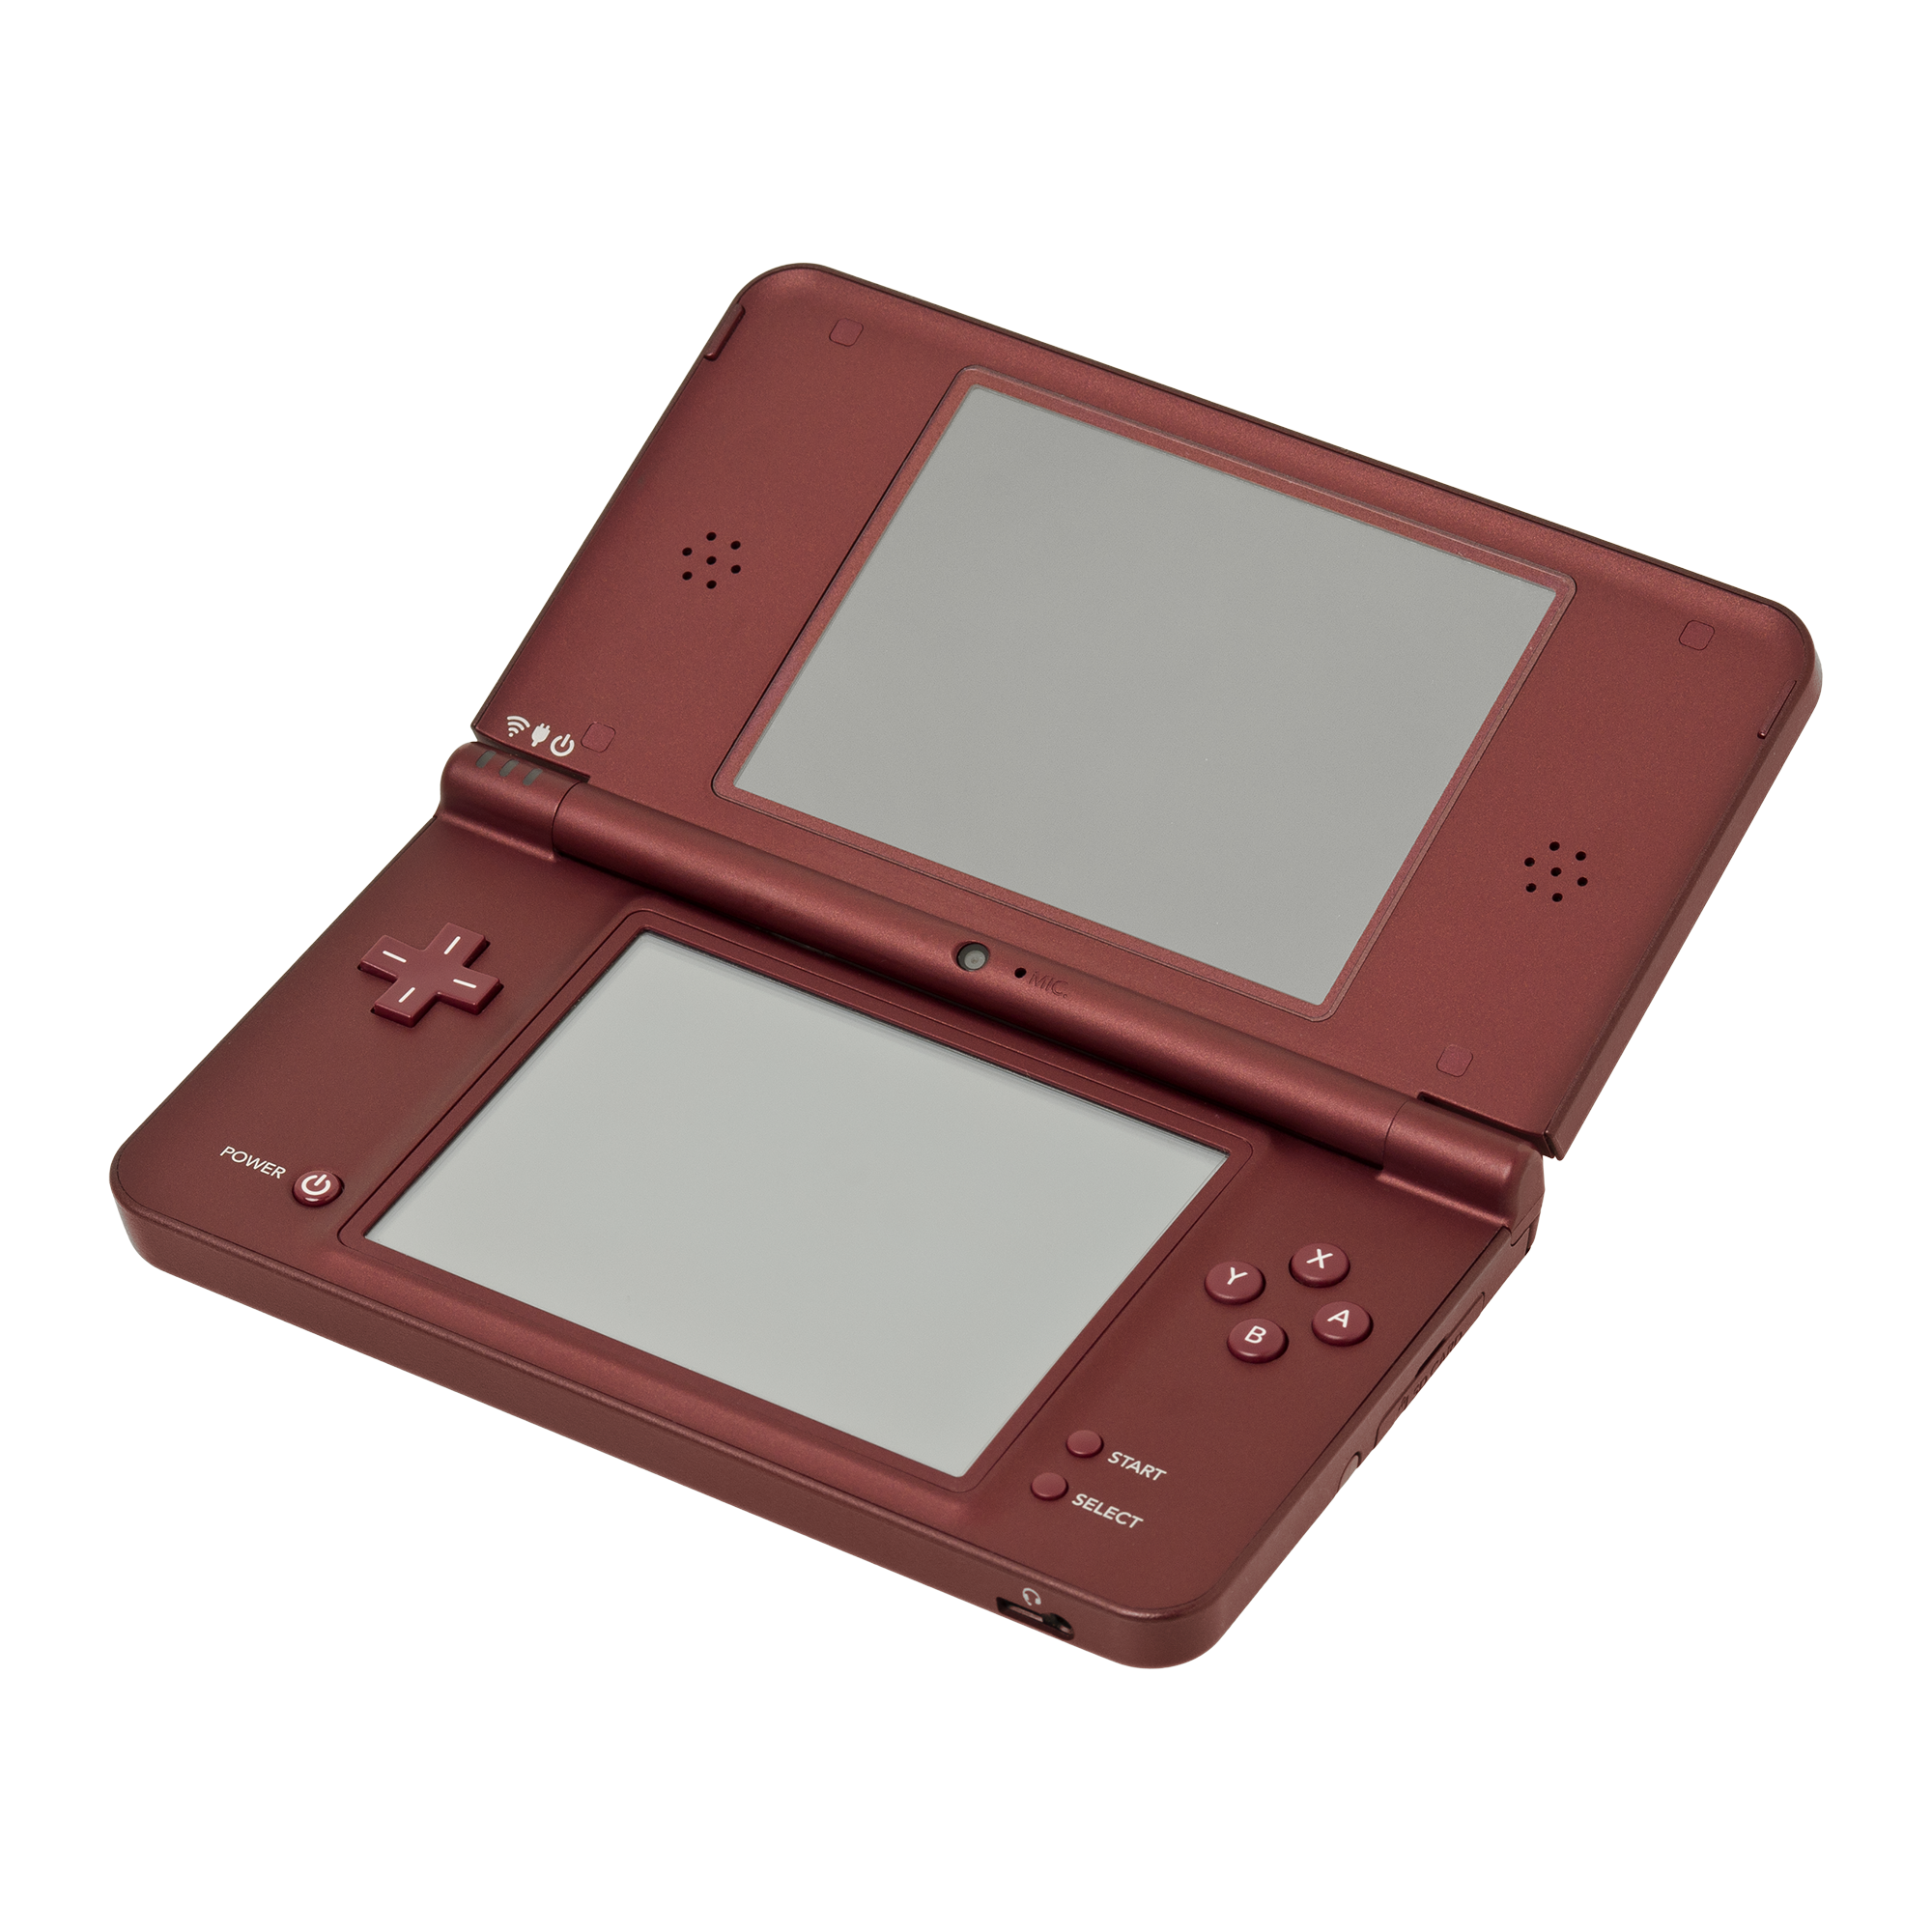 NDS Nintendo DS游戏发行目录汇总 - 午后少年的小抽屉(9iOldGame.com)